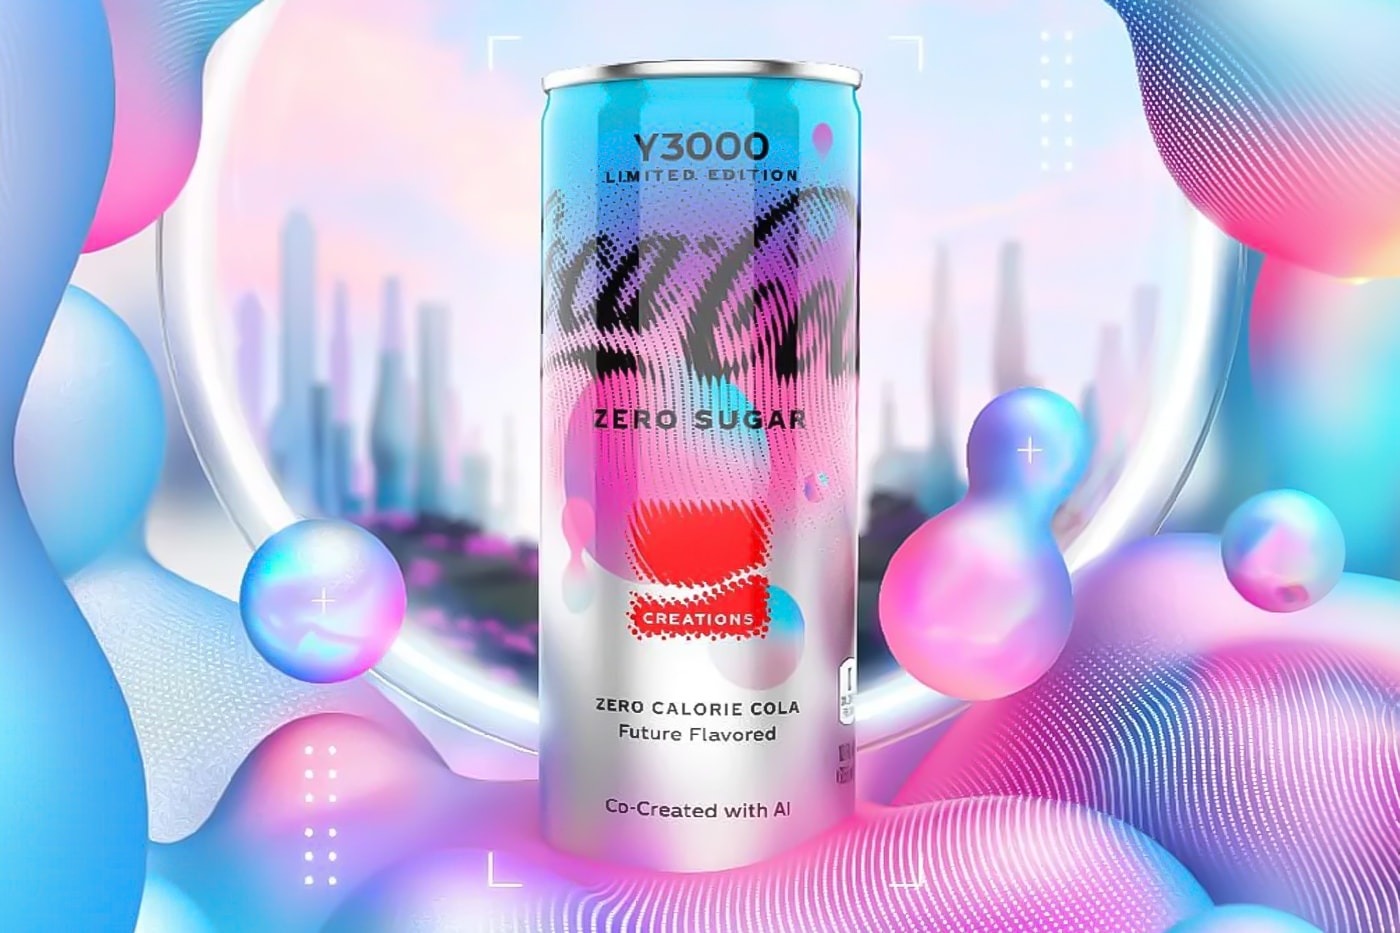 コカ・コーラが AI と共同開発した“未来の味”のコーラを発表 Coca-Cola Has Launched New AI-Created Flavor coca-cola y3000 zero sugar artificial intelligence